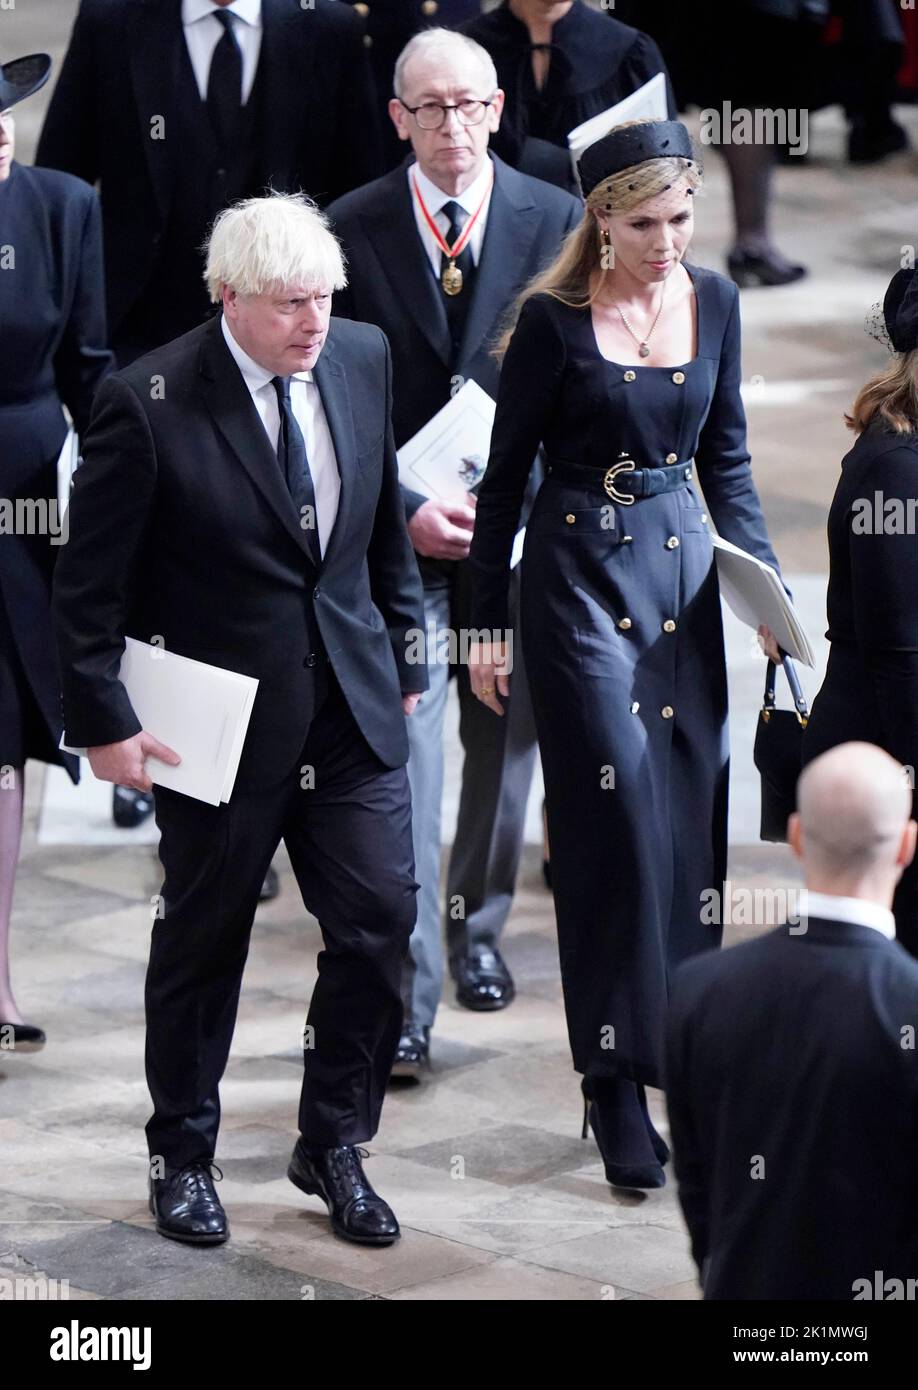 L'ancien Premier ministre Boris Johnson et son épouse Carrie Johnson quittent l'abbaye de Westminster, à Londres, après le funérailles d'État de la reine Elizabeth II. Date de la photo: Lundi 19 septembre 2022. Banque D'Images